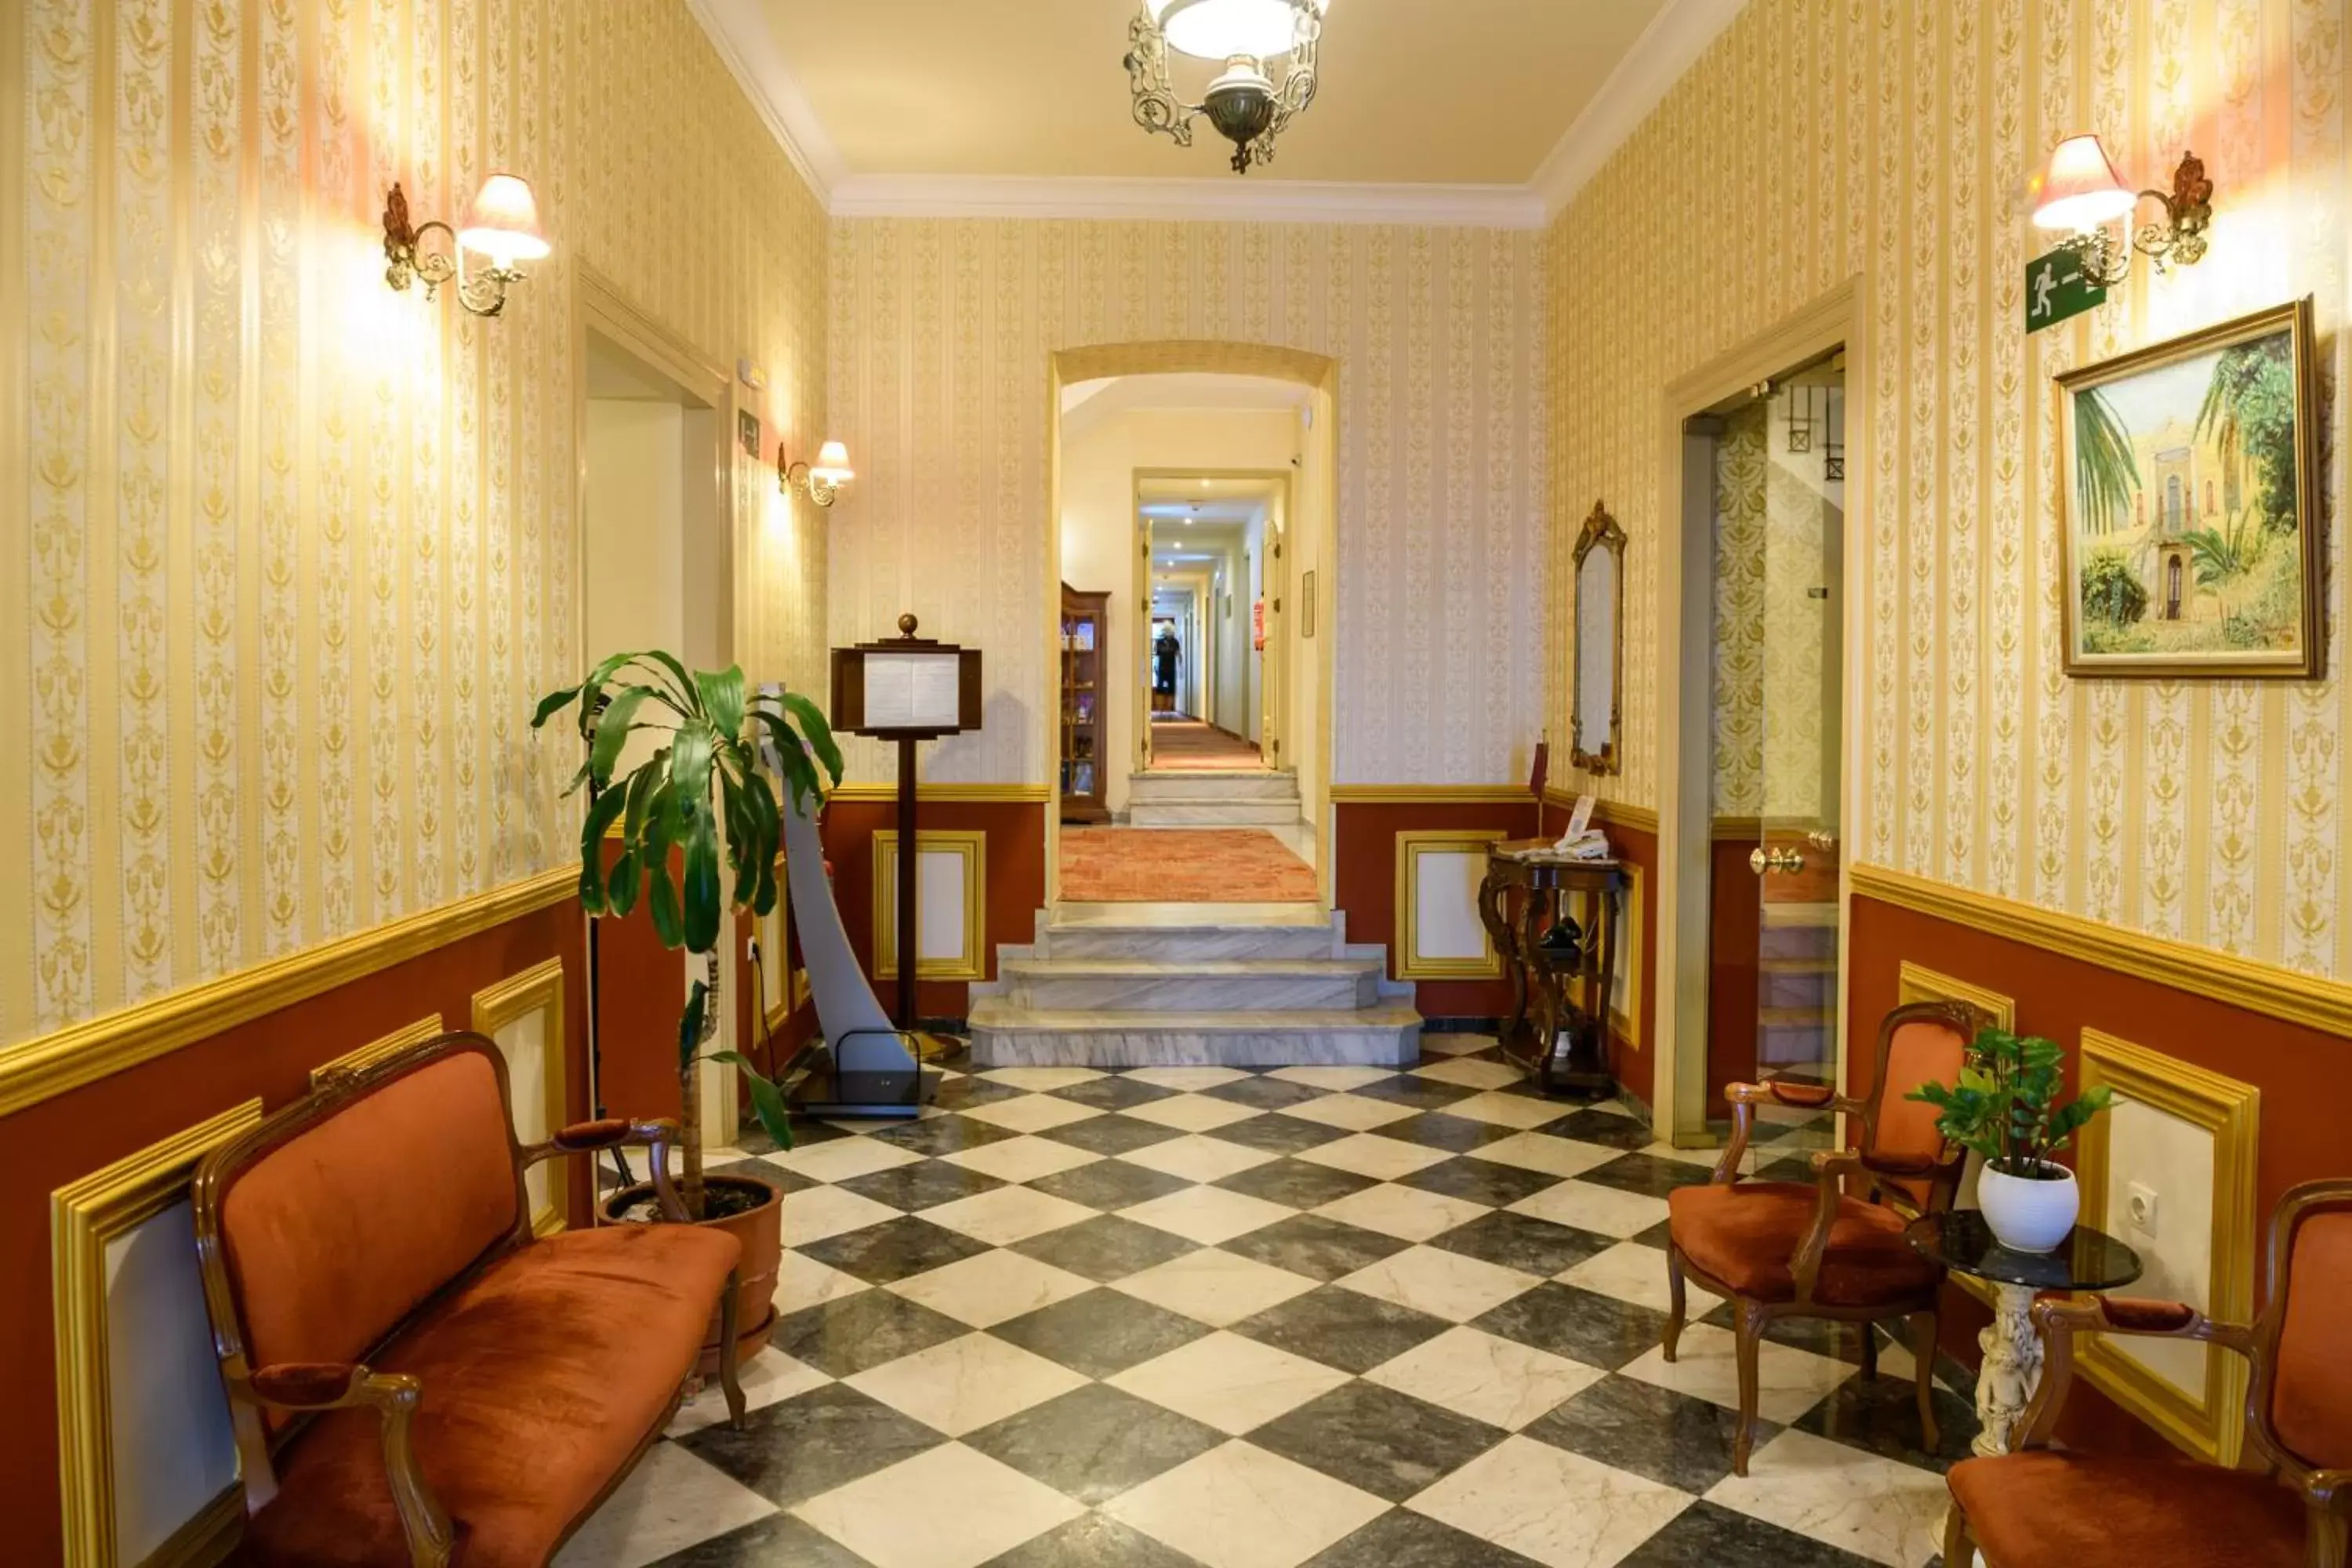 Lobby or reception, Lobby/Reception in Halepa Hotel